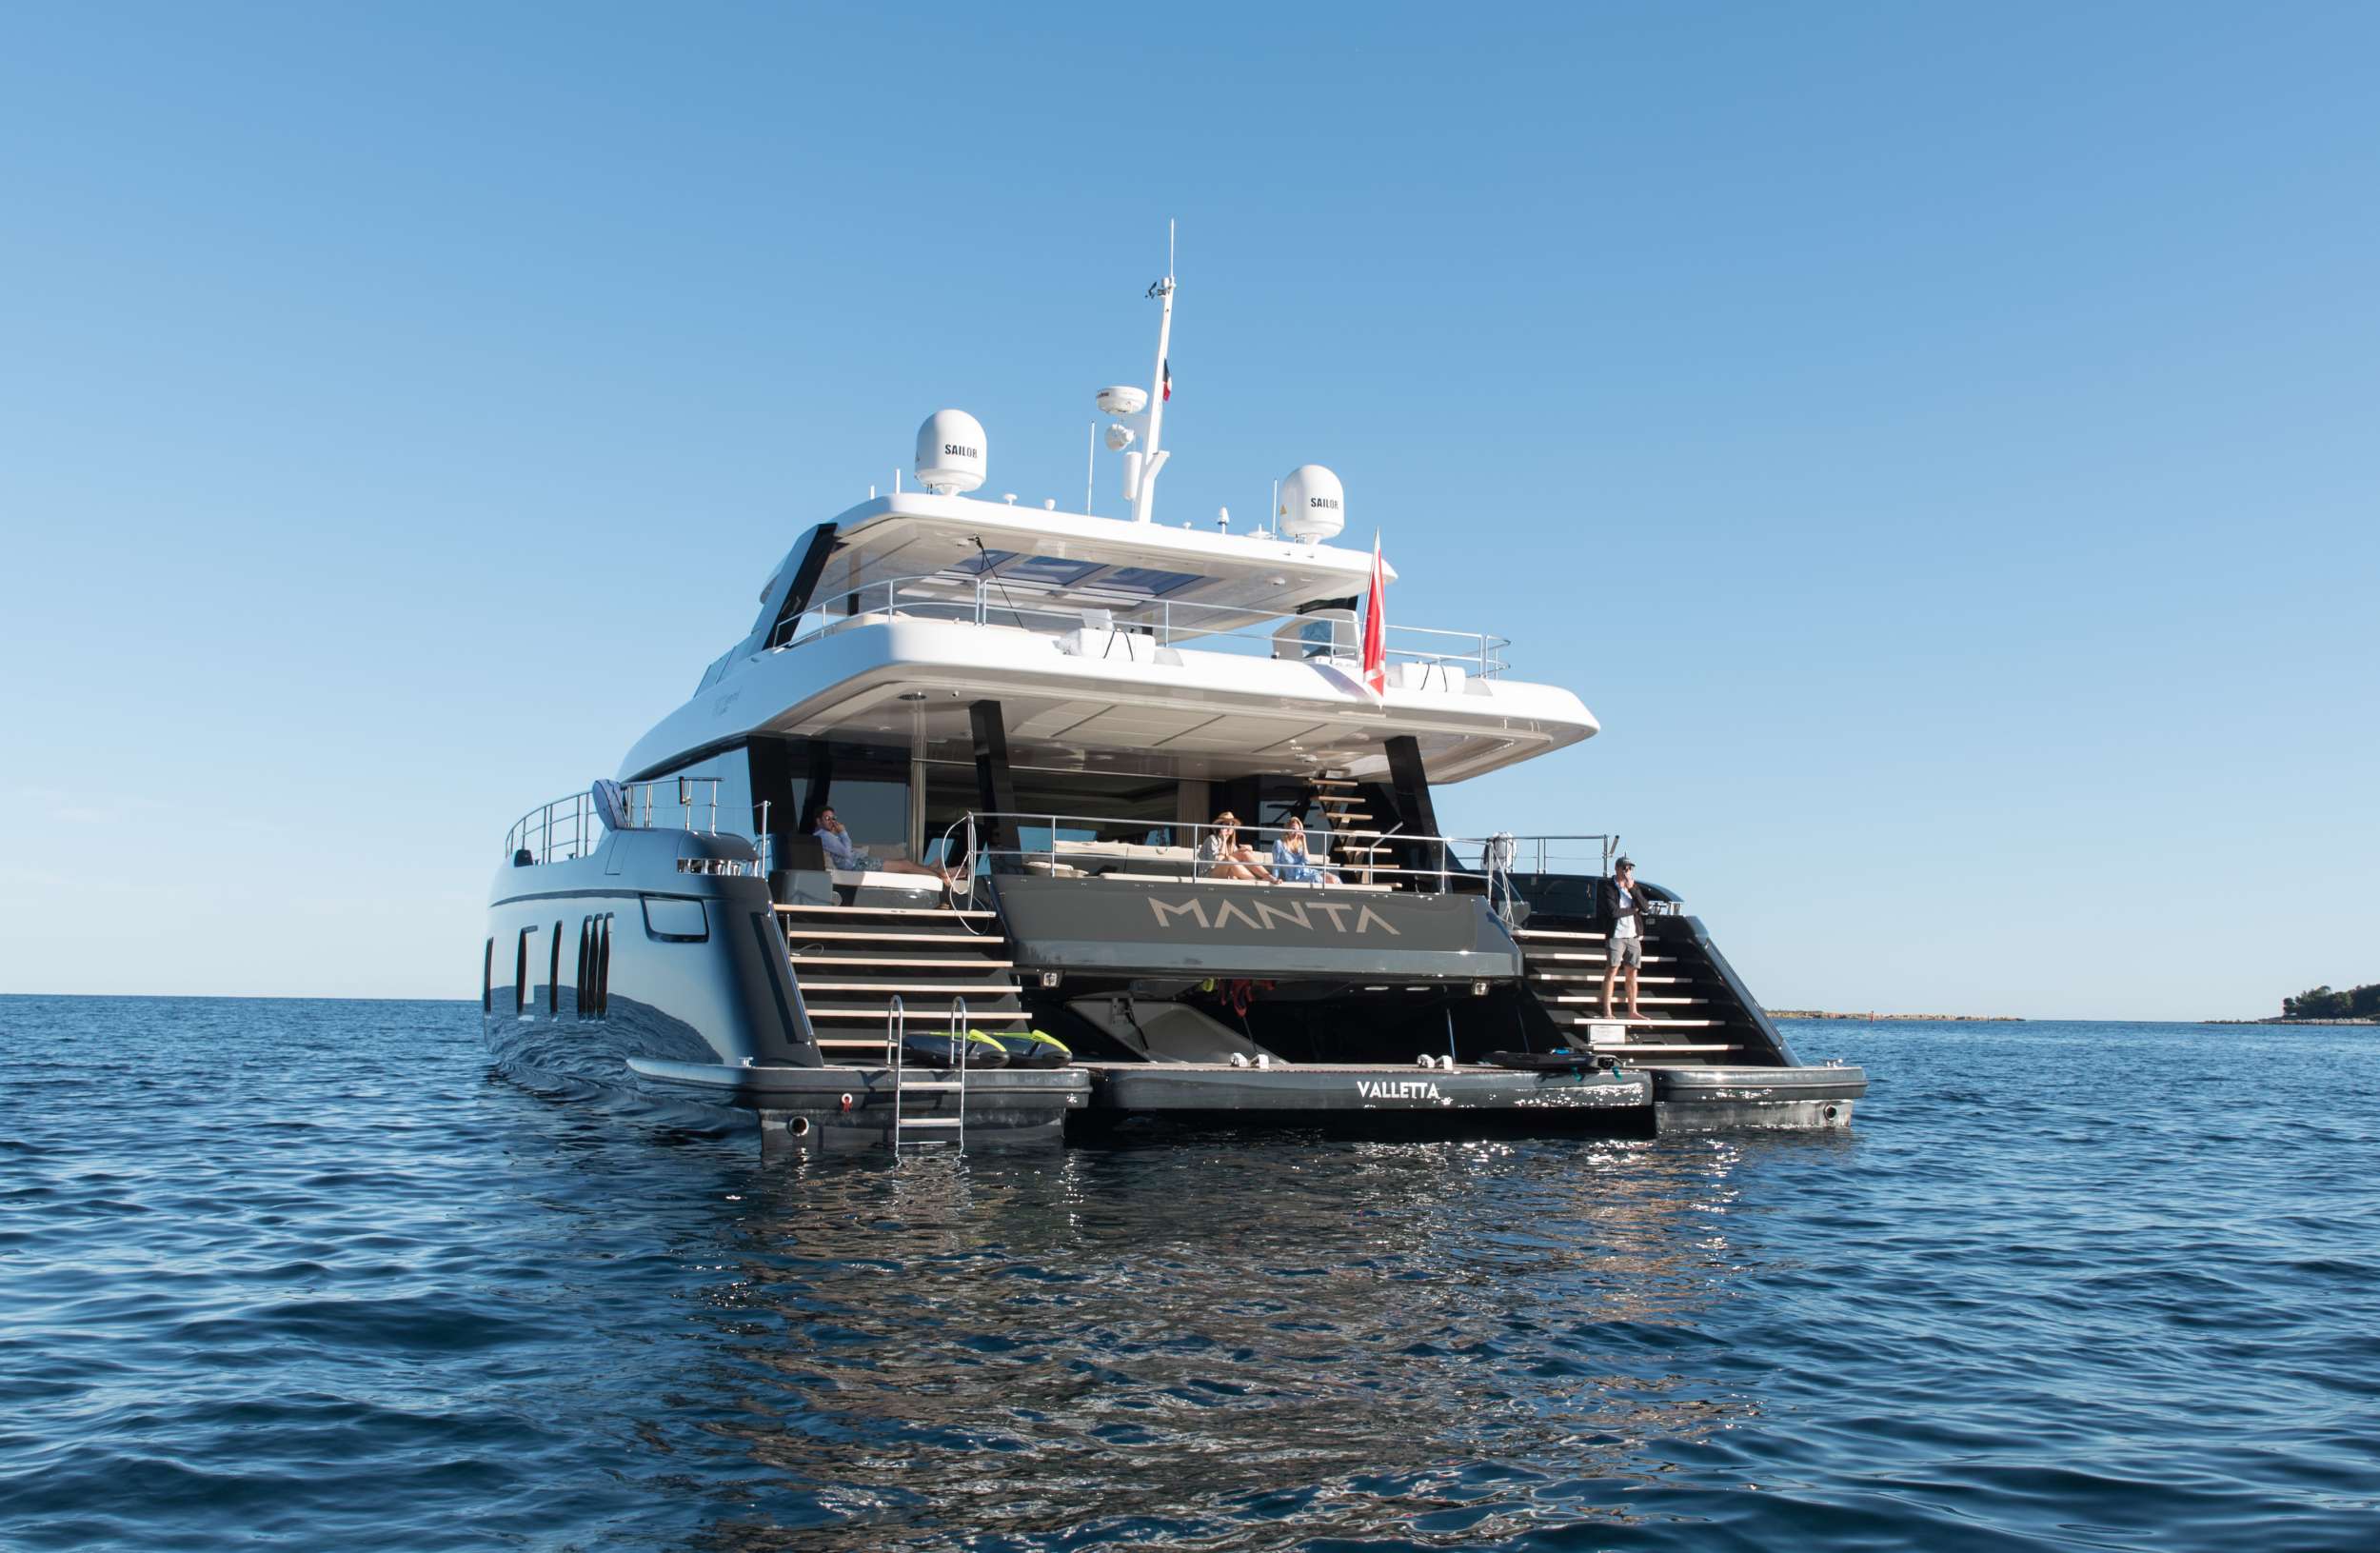 MANTA - Yacht Charter Istanbul & Boat hire in Riviera, Cors, Sard, Italy, Spain, Turkey, Croatia, Greece 1